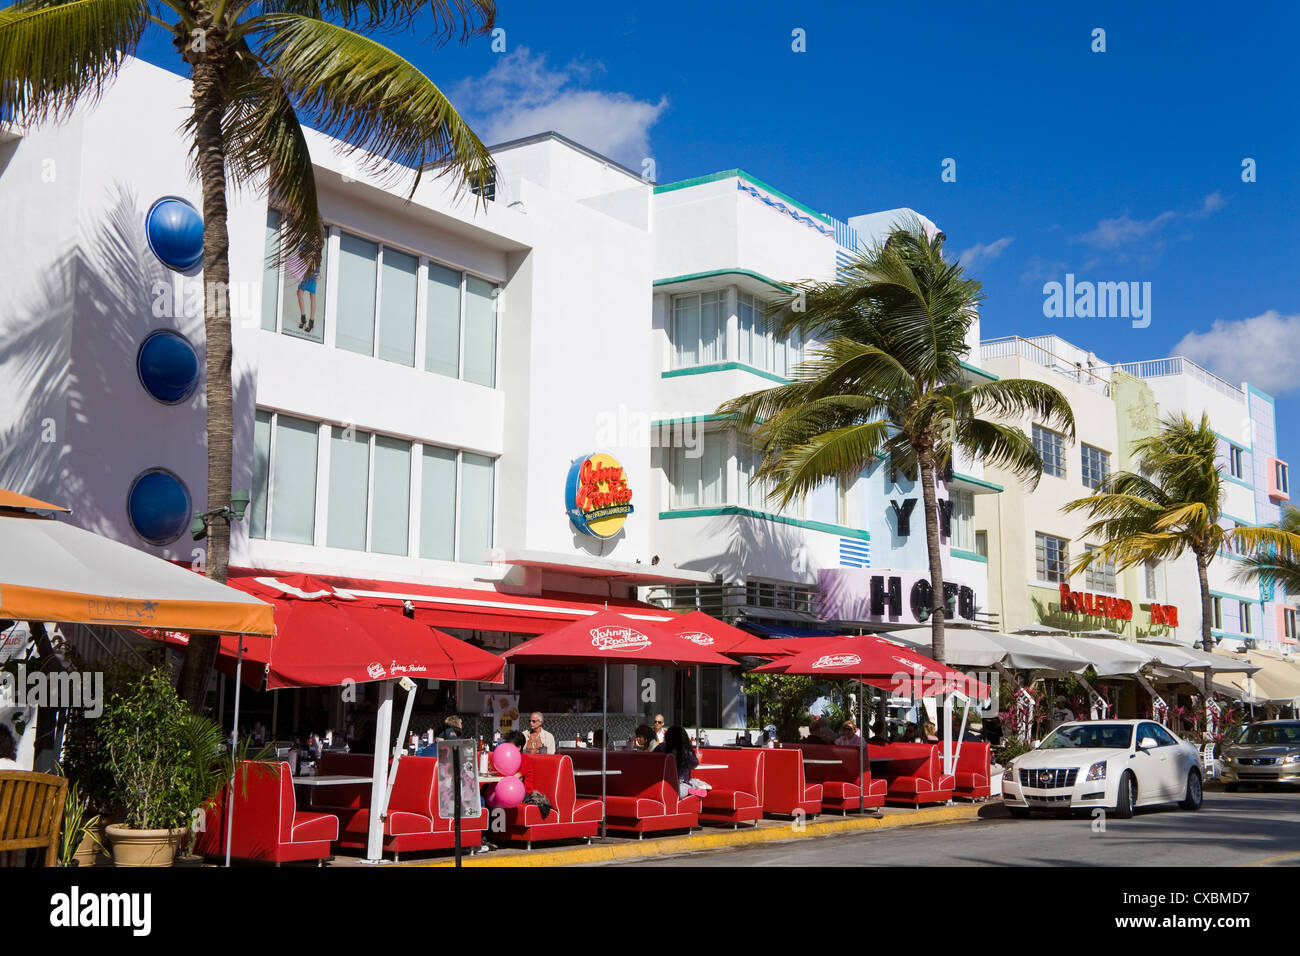 Johnny Rockets restaurant à South Beach, Miami Beach, Floride, États-Unis d'Amérique, Amérique du Nord Banque D'Images